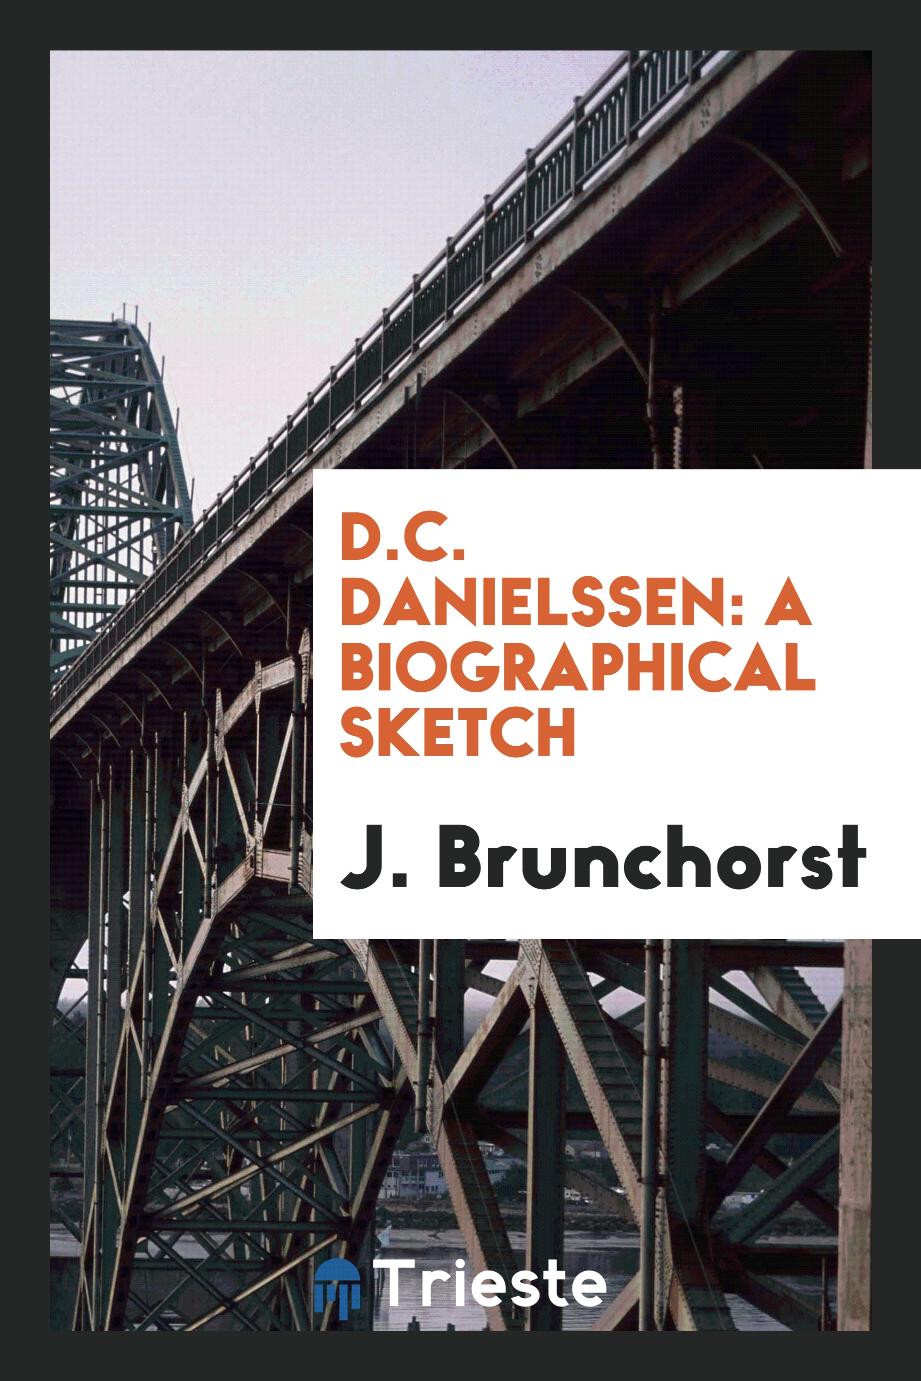 D.C. Danielssen: a biographical sketch